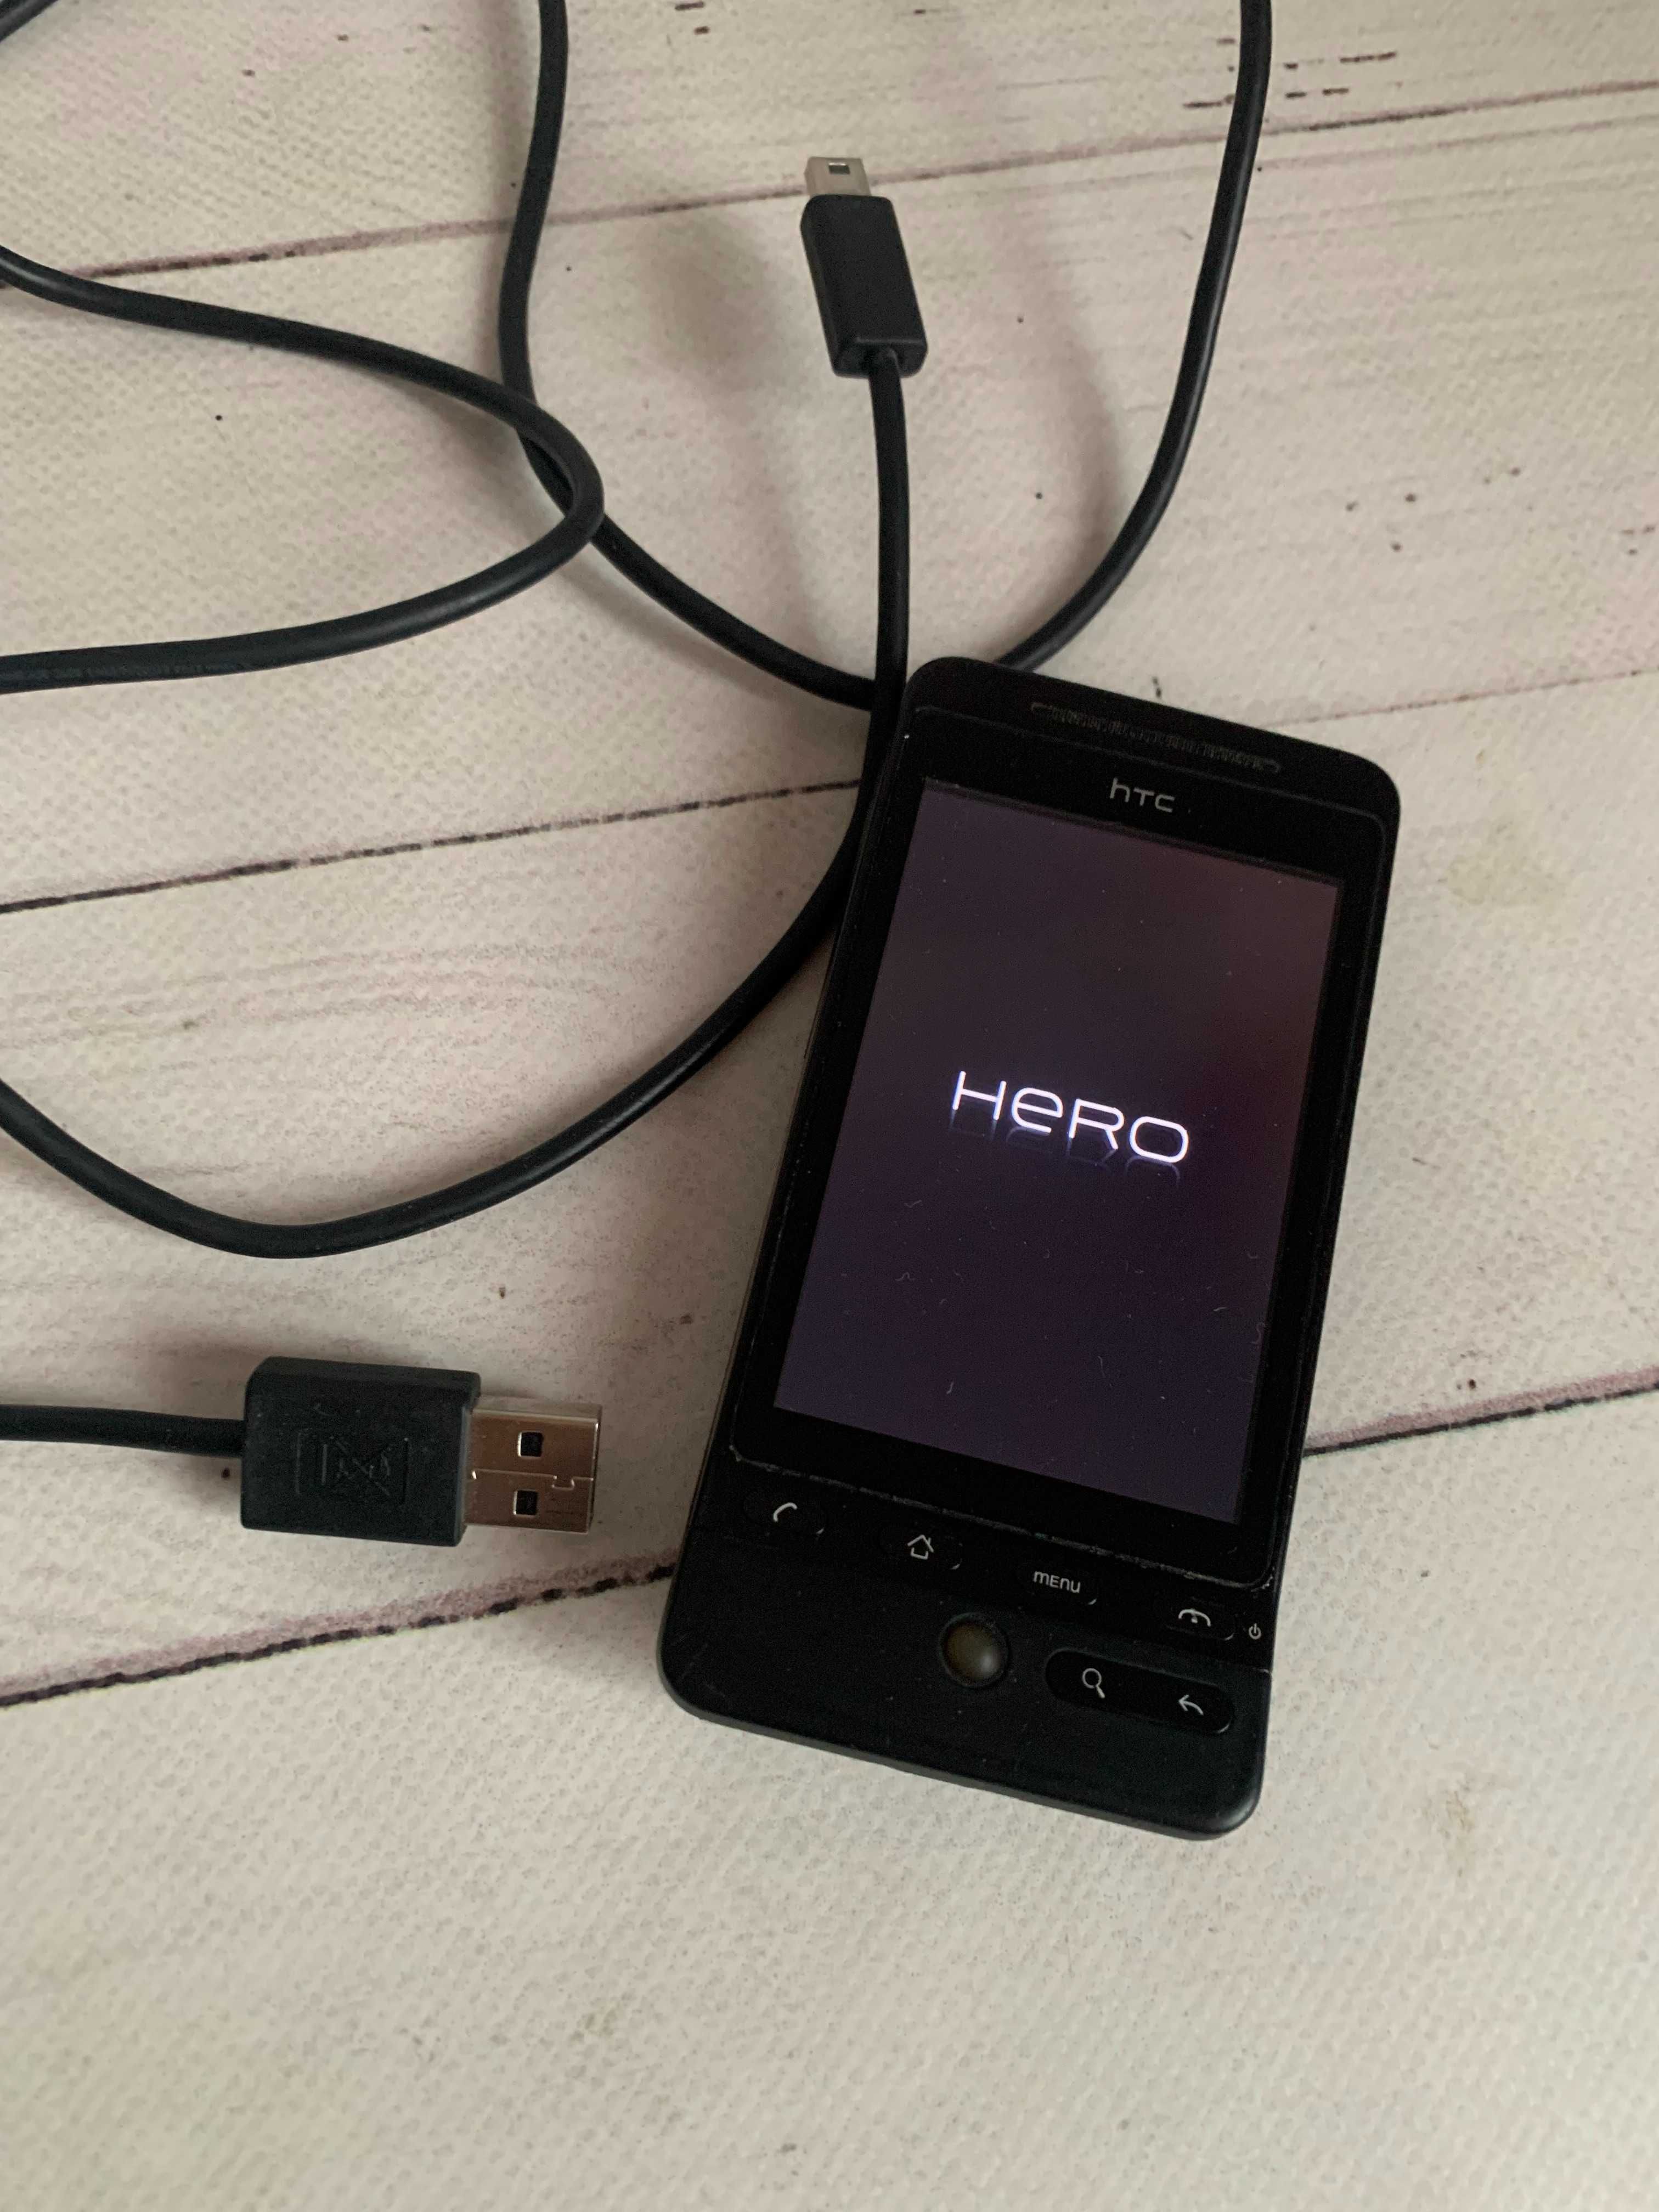 Мобильный телефон HTC Hero (A6262)  Гарний стан, працює справно.